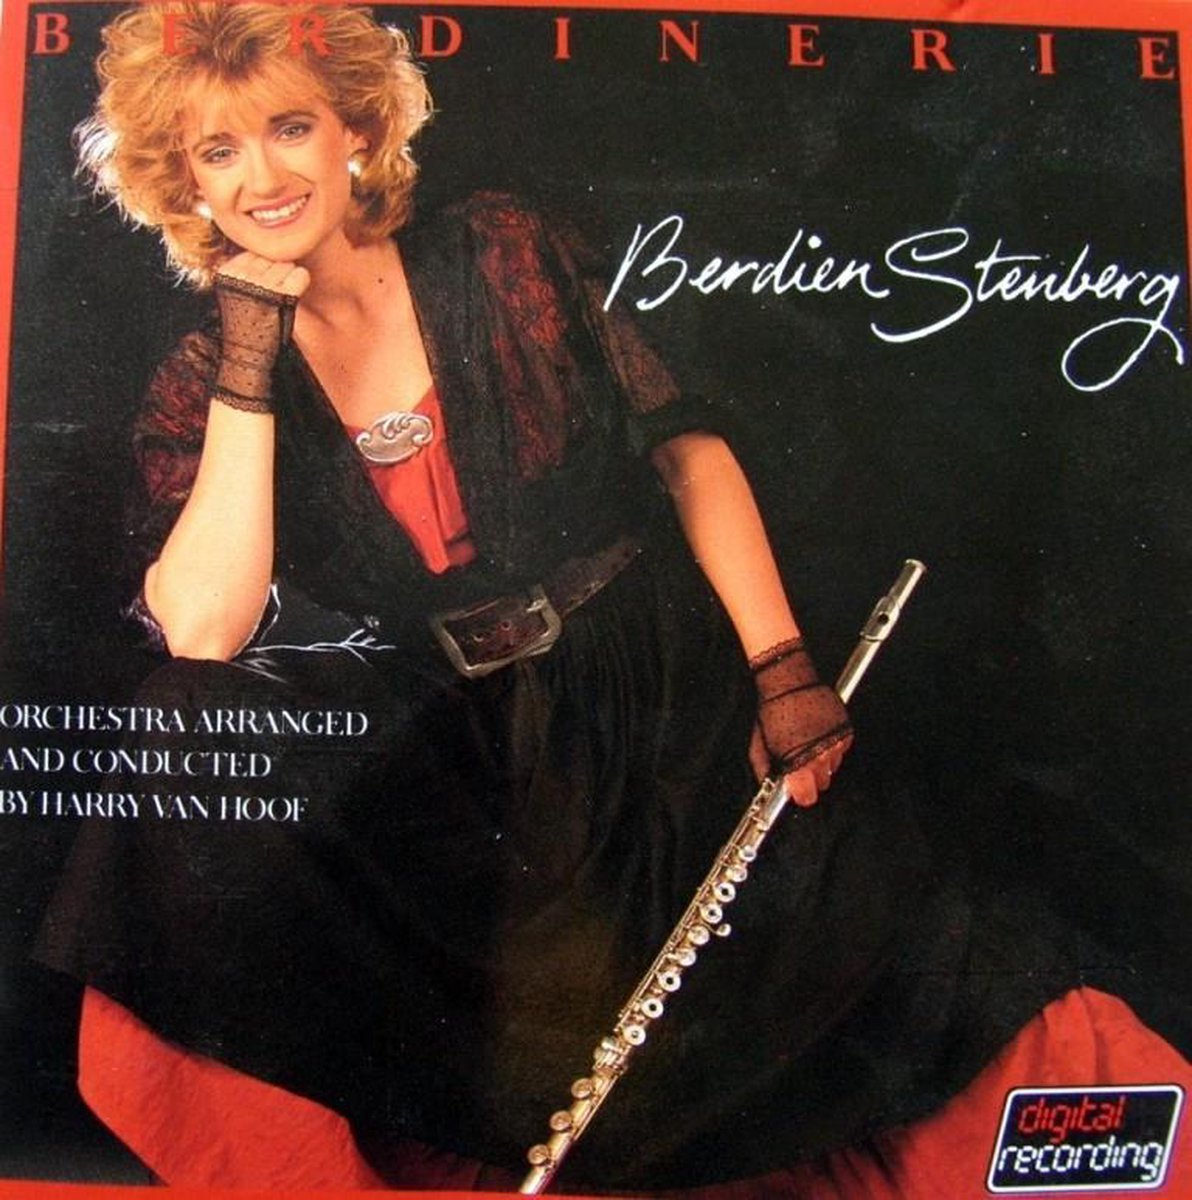 Berdinerie - 1-CD BERDIEN STENBERG - BERDINERIE